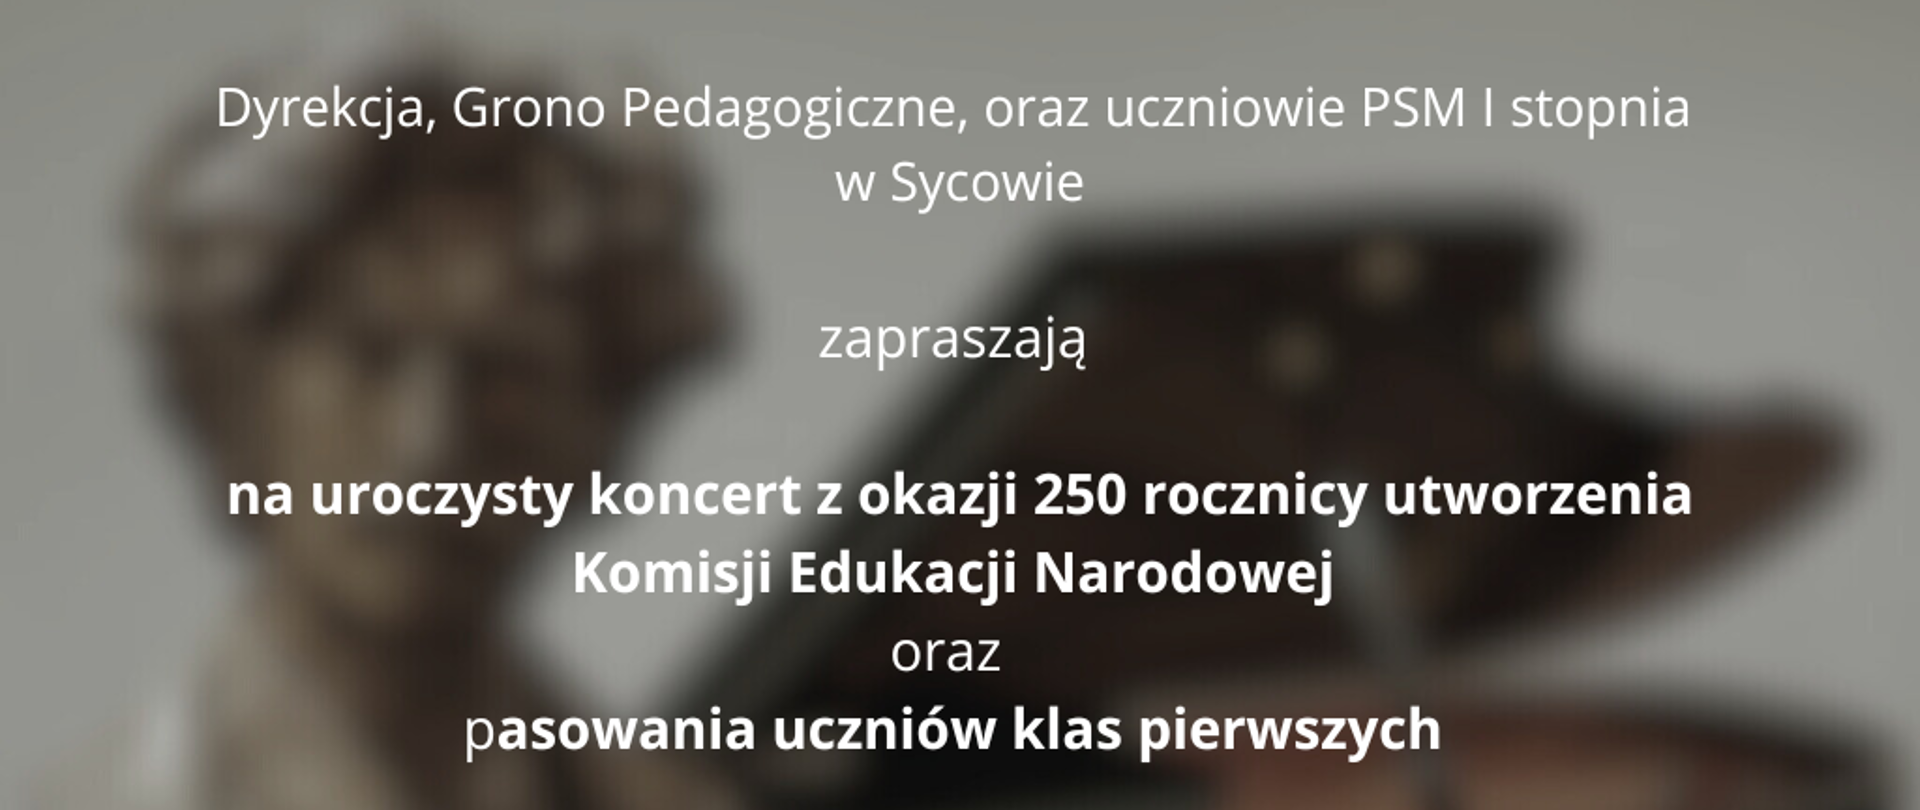 Plakat z informacją o koncercie z okazji utworzenia komisji edukacji narodowej. Białe napisy na tle popiersia Paderewskiego.